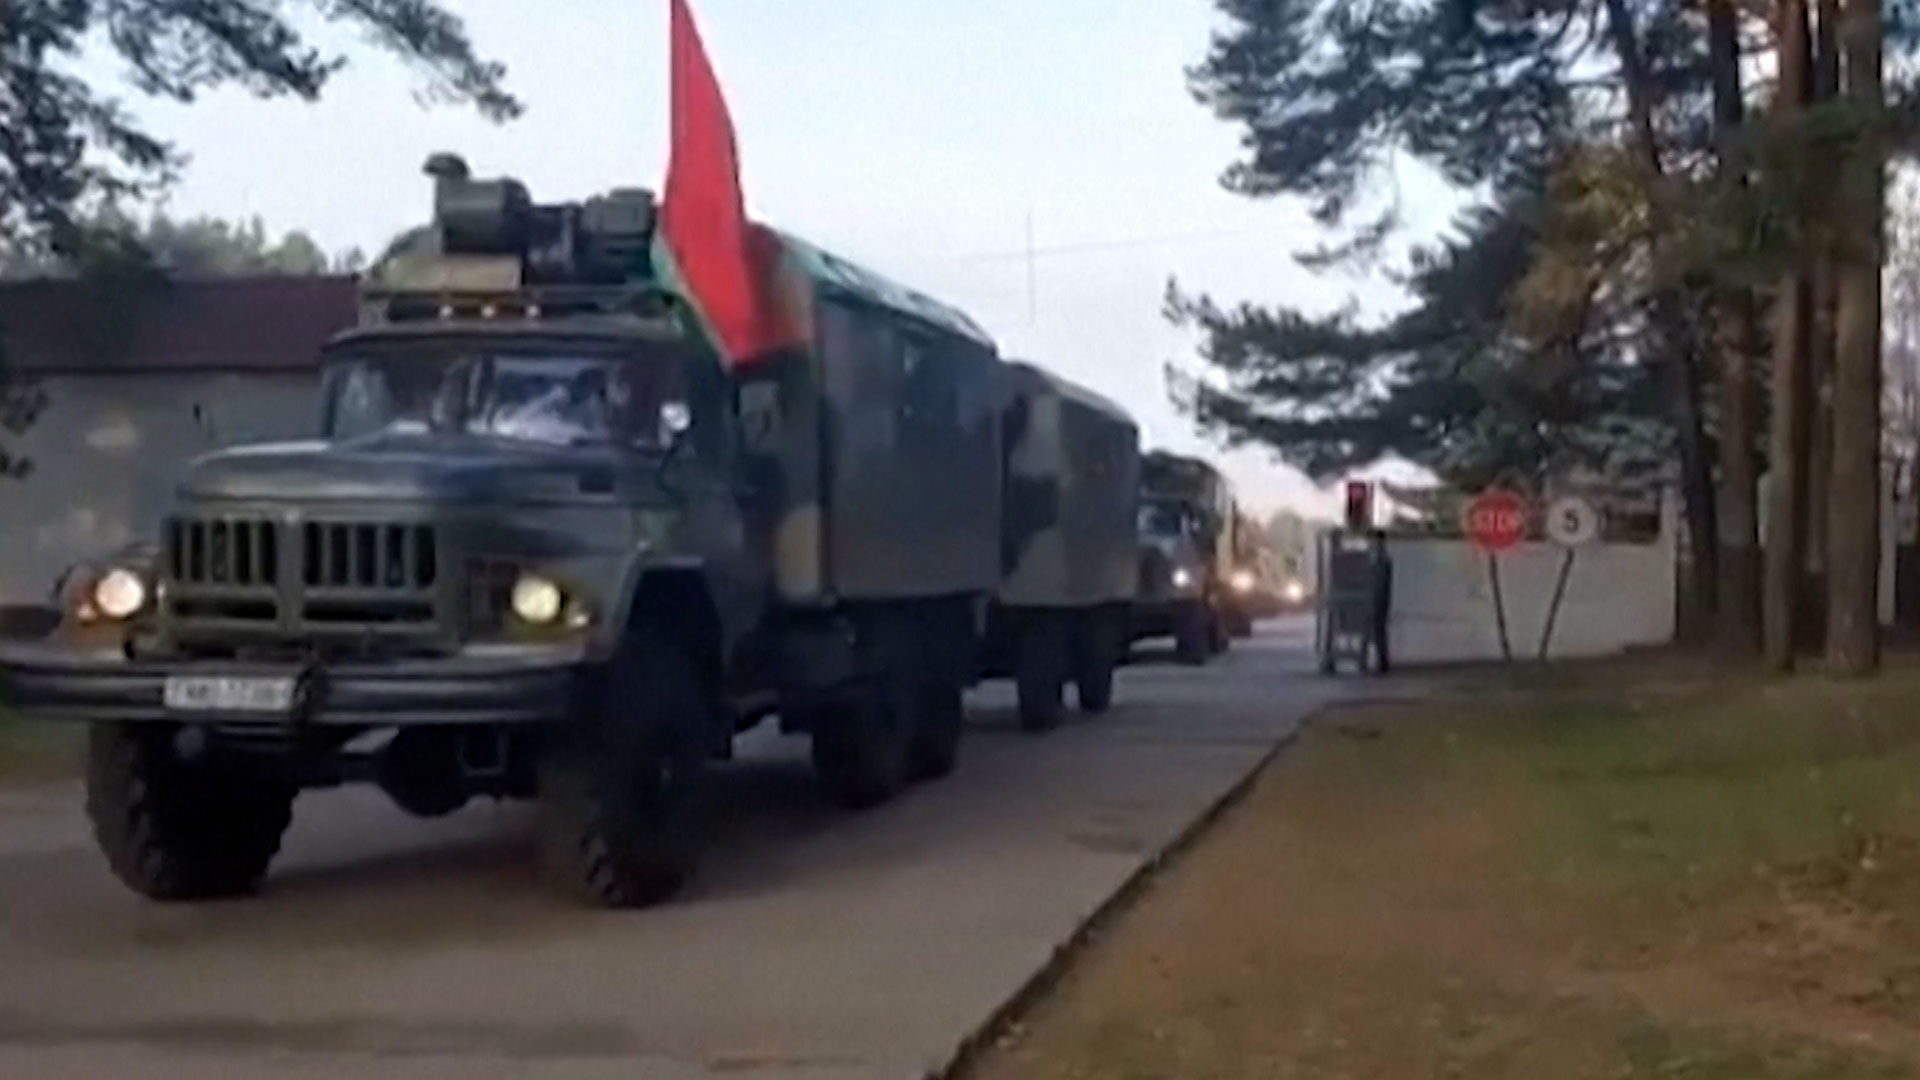 Russian troops arrive in Belarus